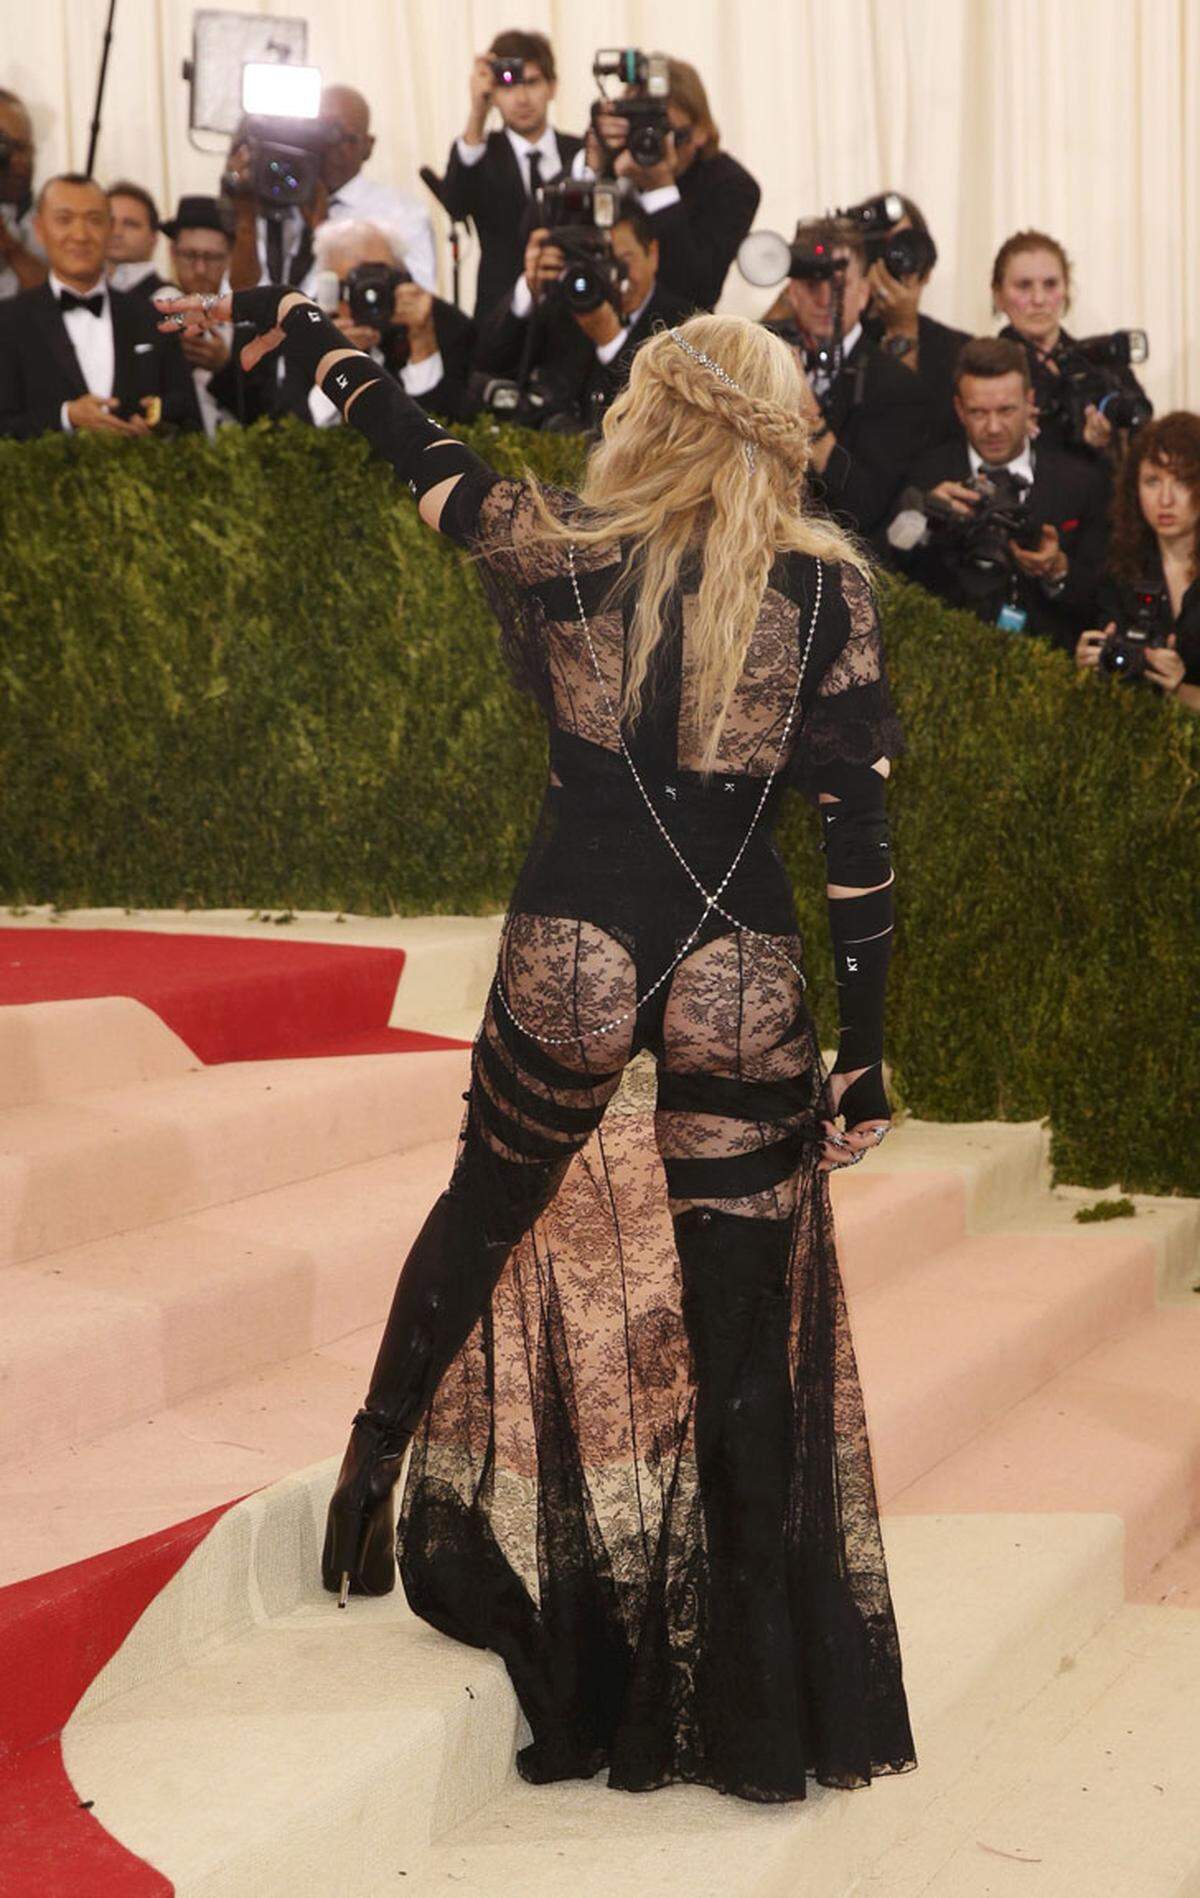 Einen peinlichen Outfit legte Madonna in einem Kleid, das nur wenig der Fantasie überließ, hin.